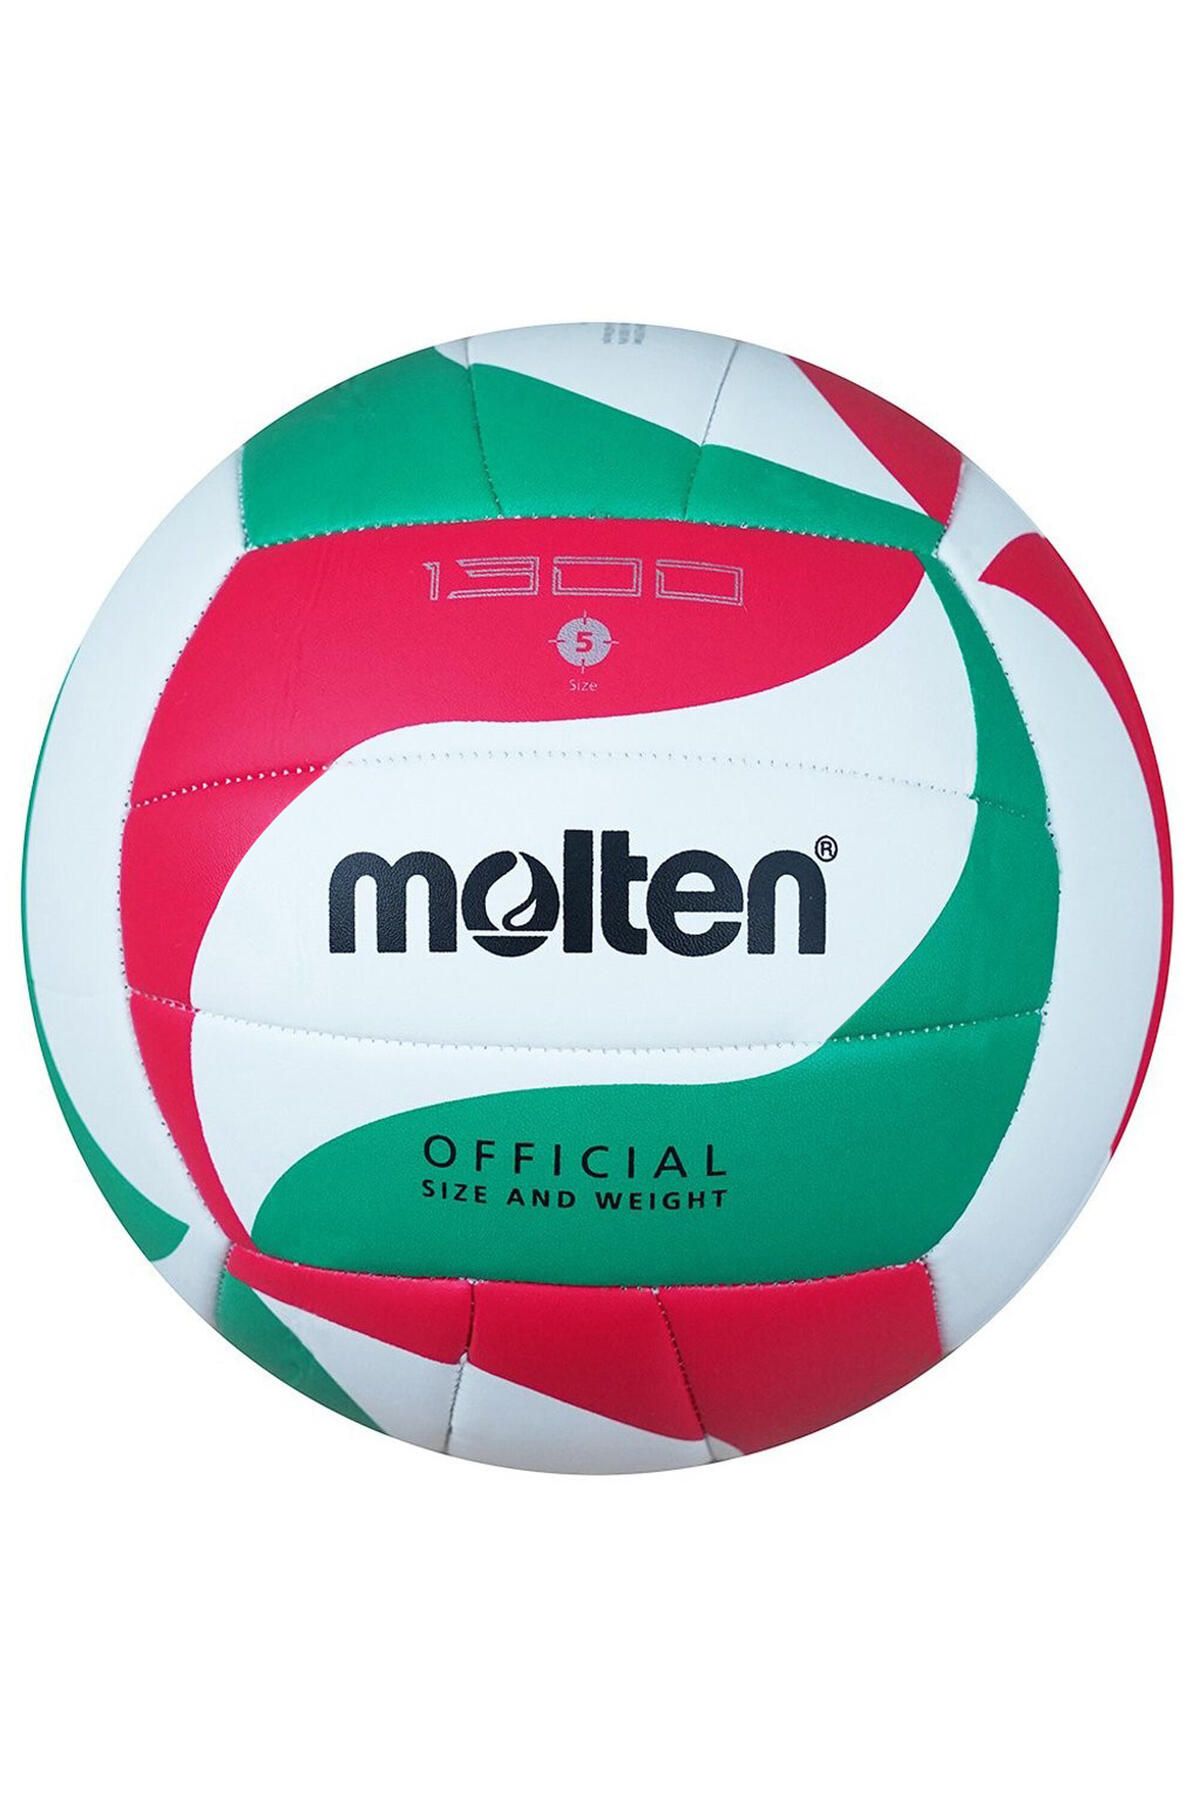 Molten Voleybol Topu - Yeşil / Beyaz / Kırmızı - MOLTEN V5M1300